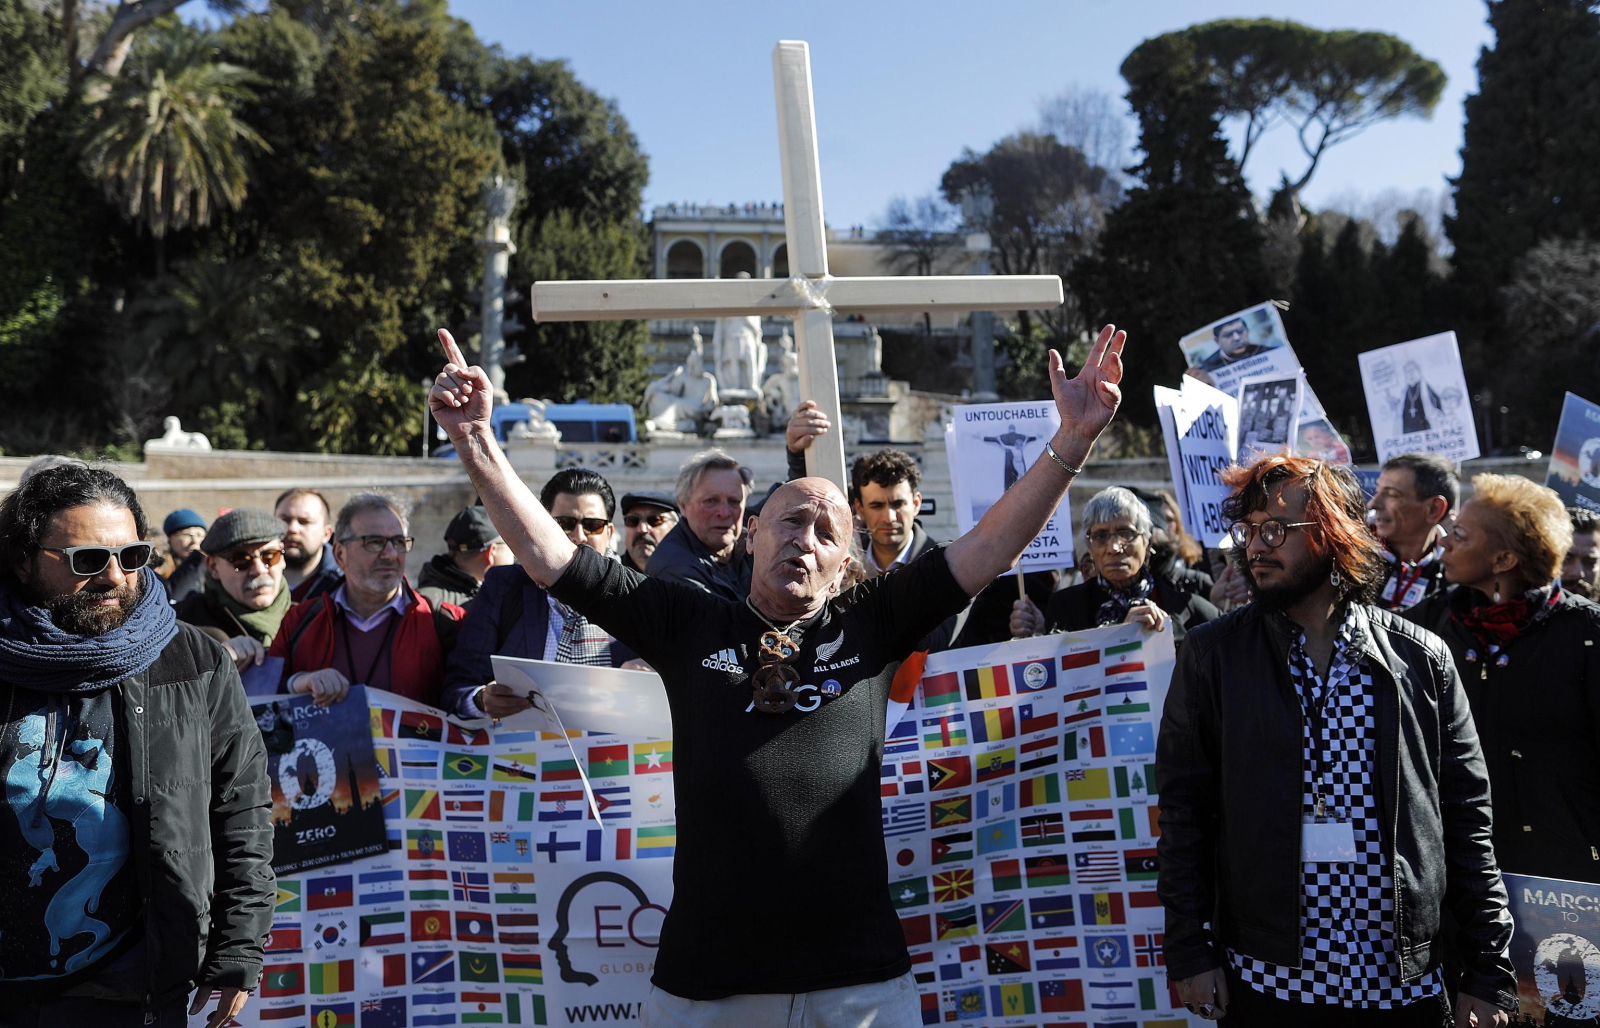 Ludzie biorą udział w Marszu na rzecz Zerowej Tolerancji podczas czterodniowego spotkania na temat globalnego kryzysu seksualnego nadużyć w Watykanie, w Rzymie. EPA / RICCARDO ANTIMIANI